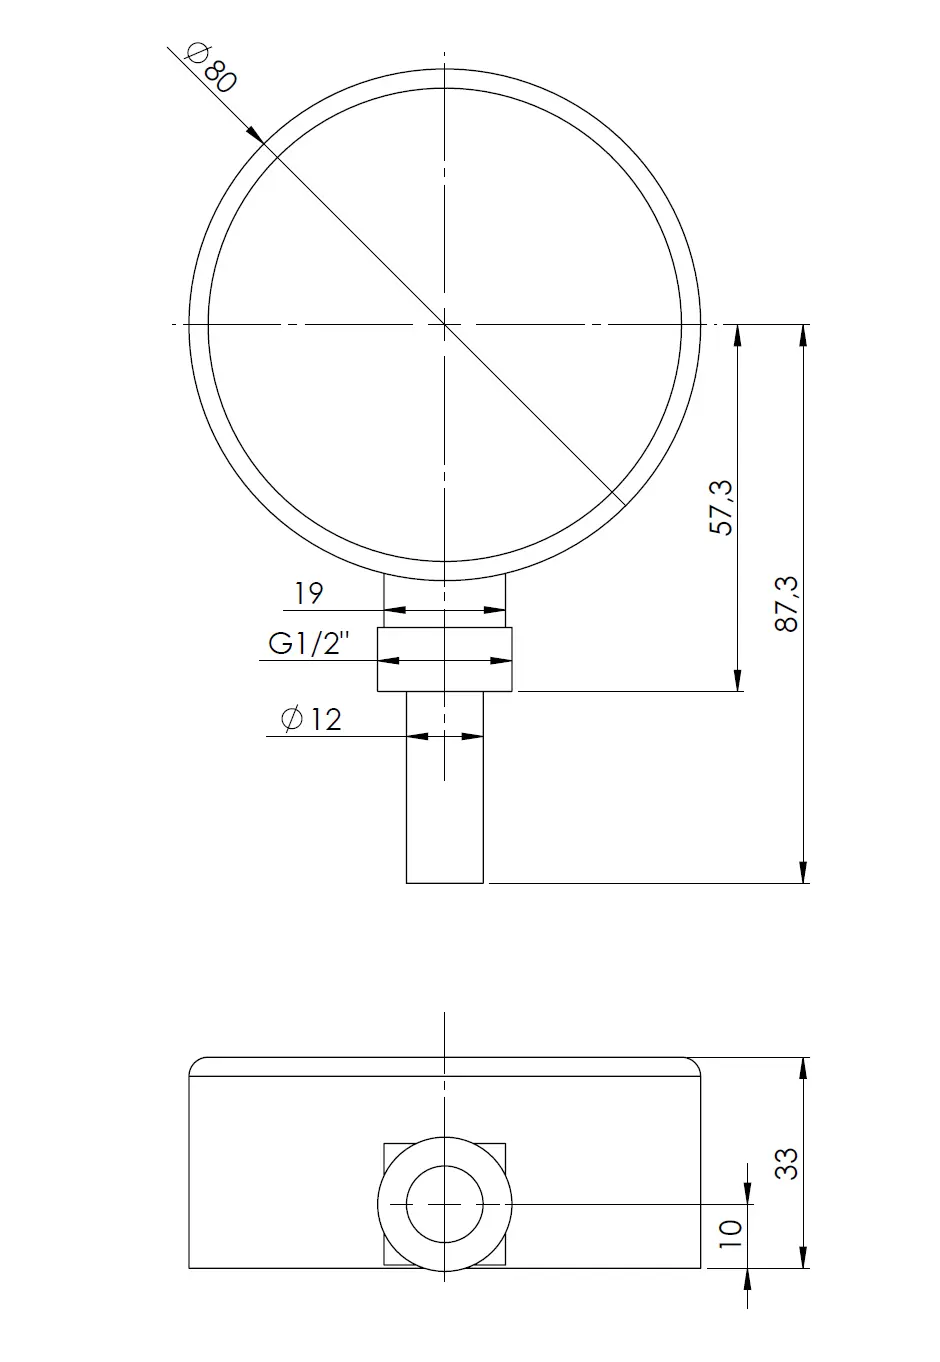 Termometr bimetaliczny BiTh 80, fi80 mm, 0÷60°C, L 40 mm, G1/2", rad, kl. 2 - budowa